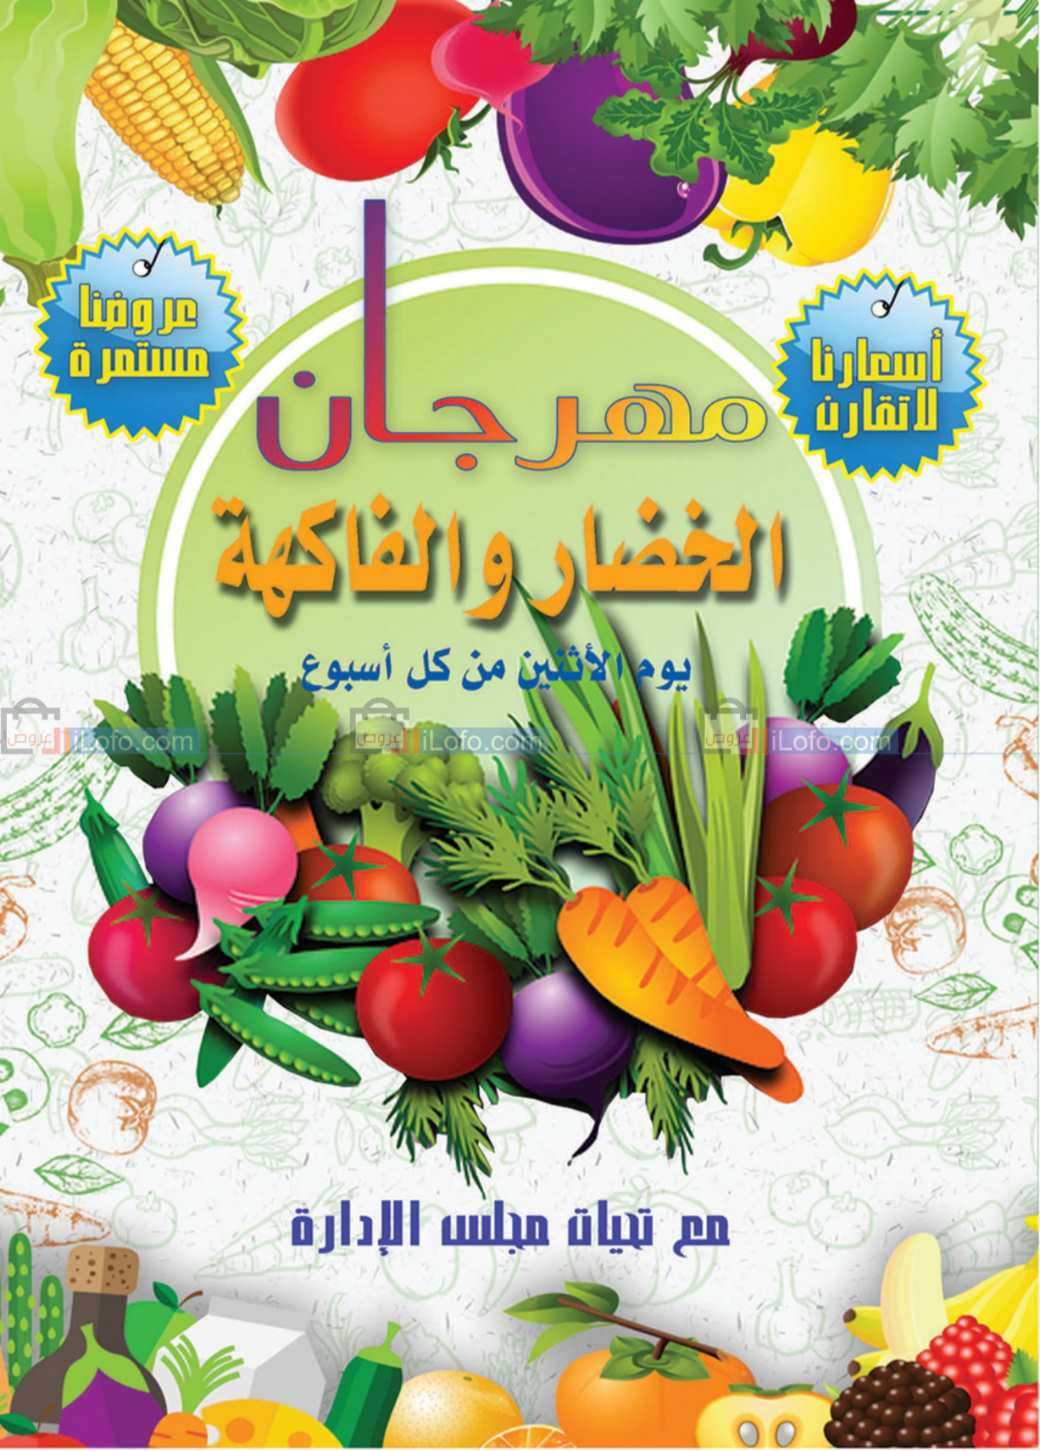 صفحة 24 في مهرجان التوفير في جمعية الرقة التعاونية الكويت